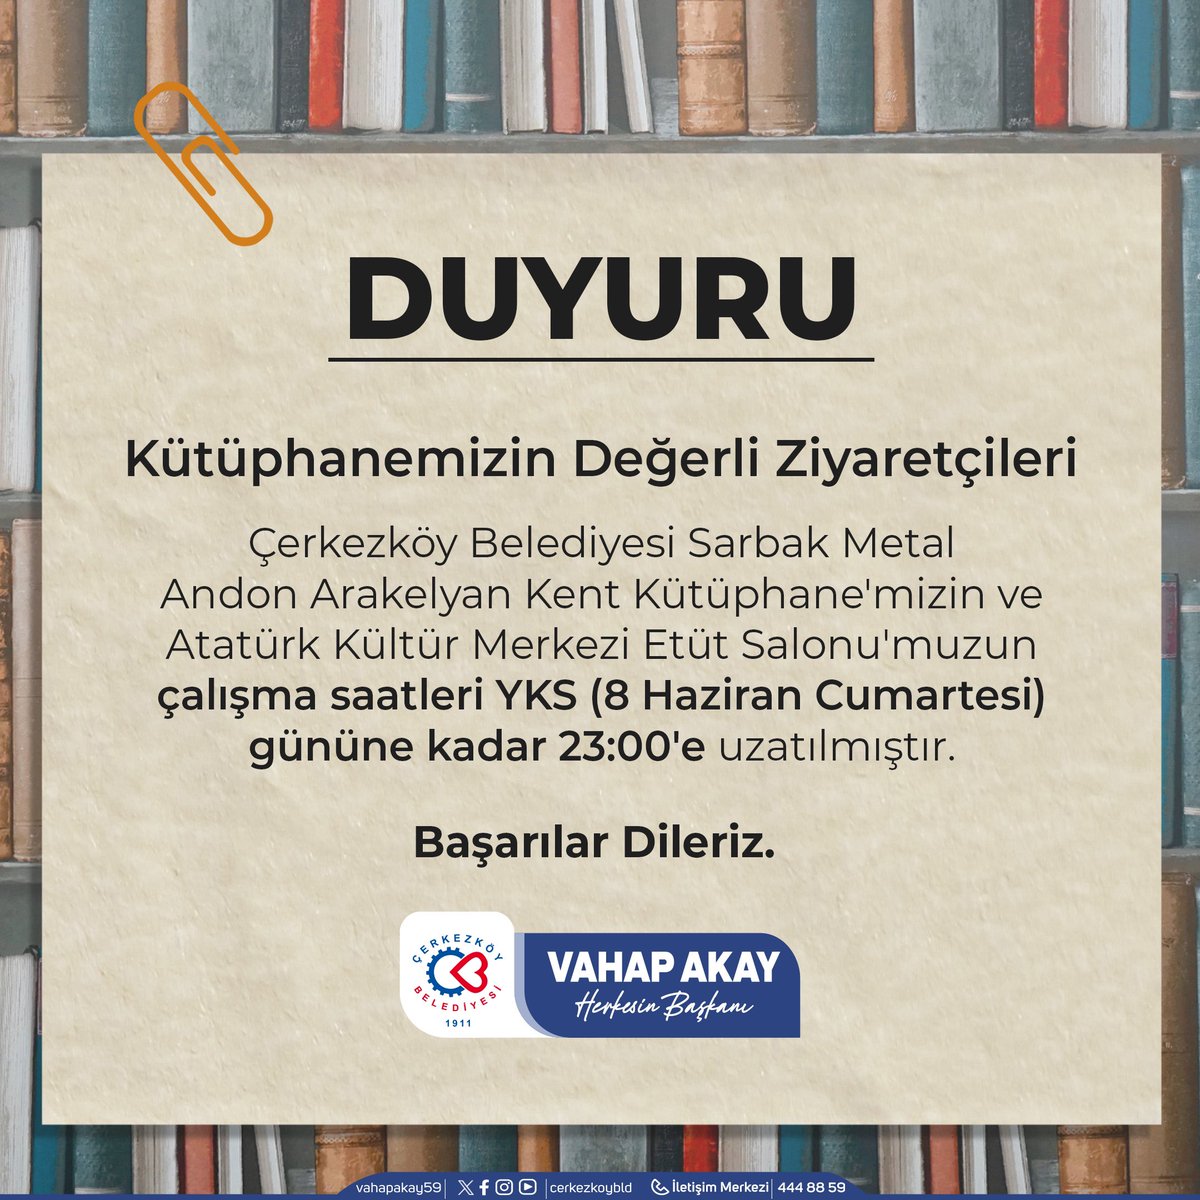 Çerkezköy Belediyesi Sarbak Metal Andon Arakelyan Kent Kütüphanesi ve Atatürk Kültür Merkezi Etüt Salonu kapanış saatleri, YKS dolayısıyla 8 Haziran Cumartesi gününe kadar 23:00'e uzatılmıştır. Çalışmalarınızda başarılar dileriz.🫶🏻